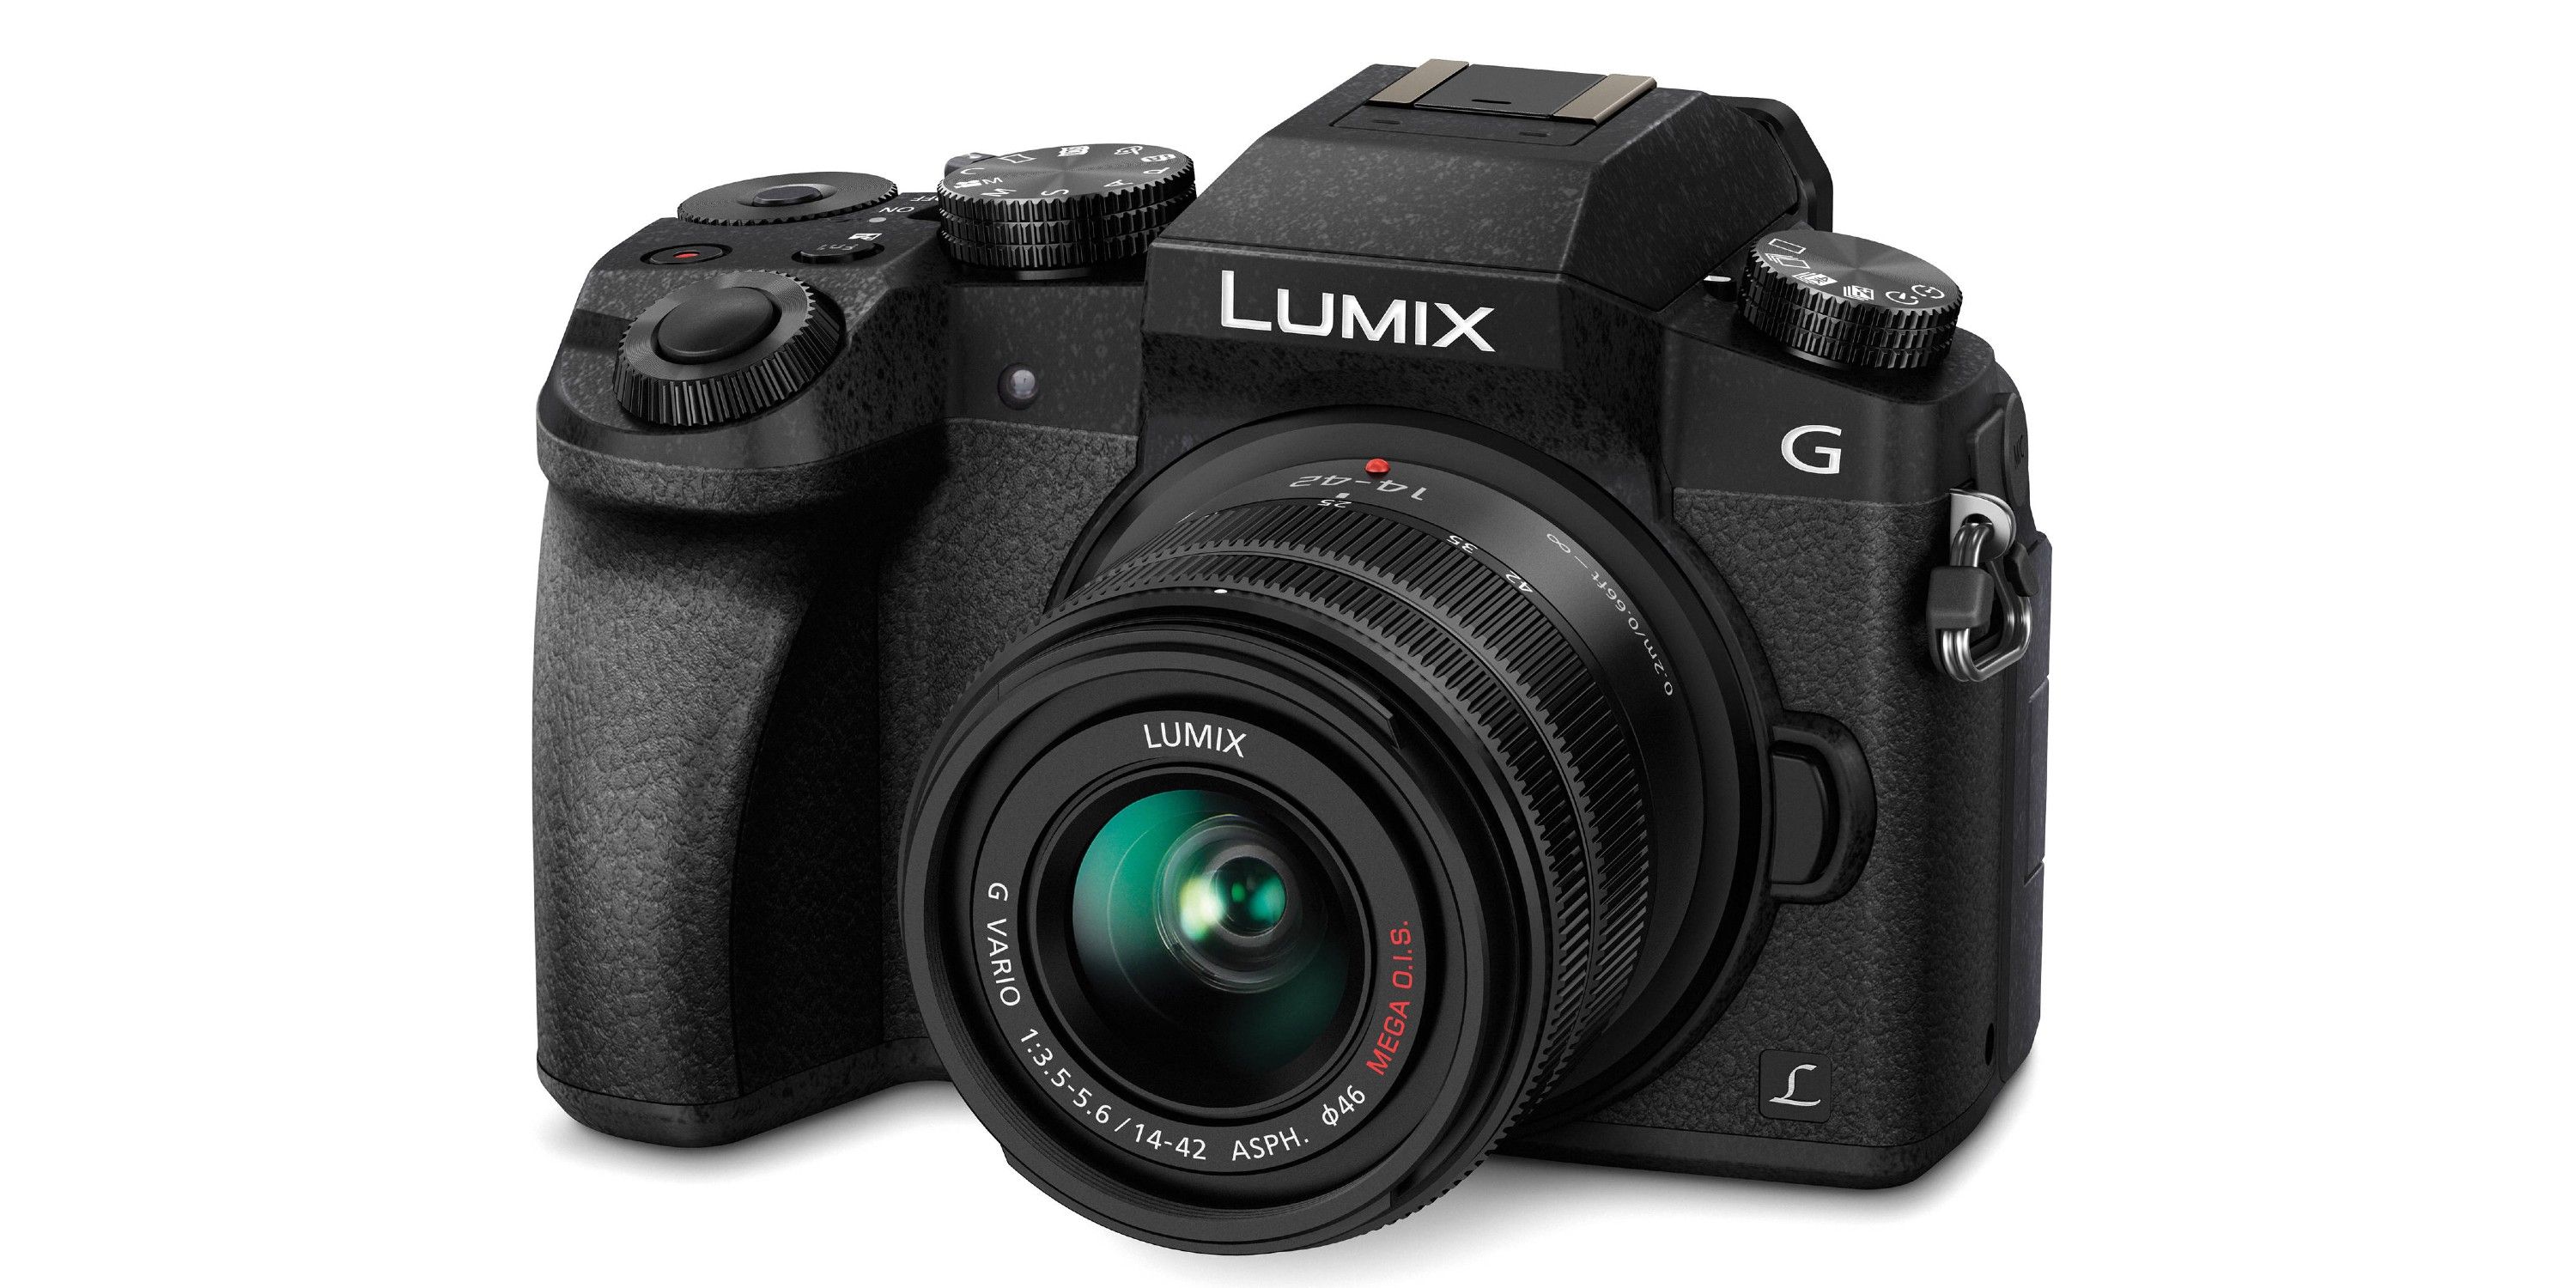 broeden Rode datum atomair Panasonic's G7 DSLR Camera Is A Filmmaking Bargain